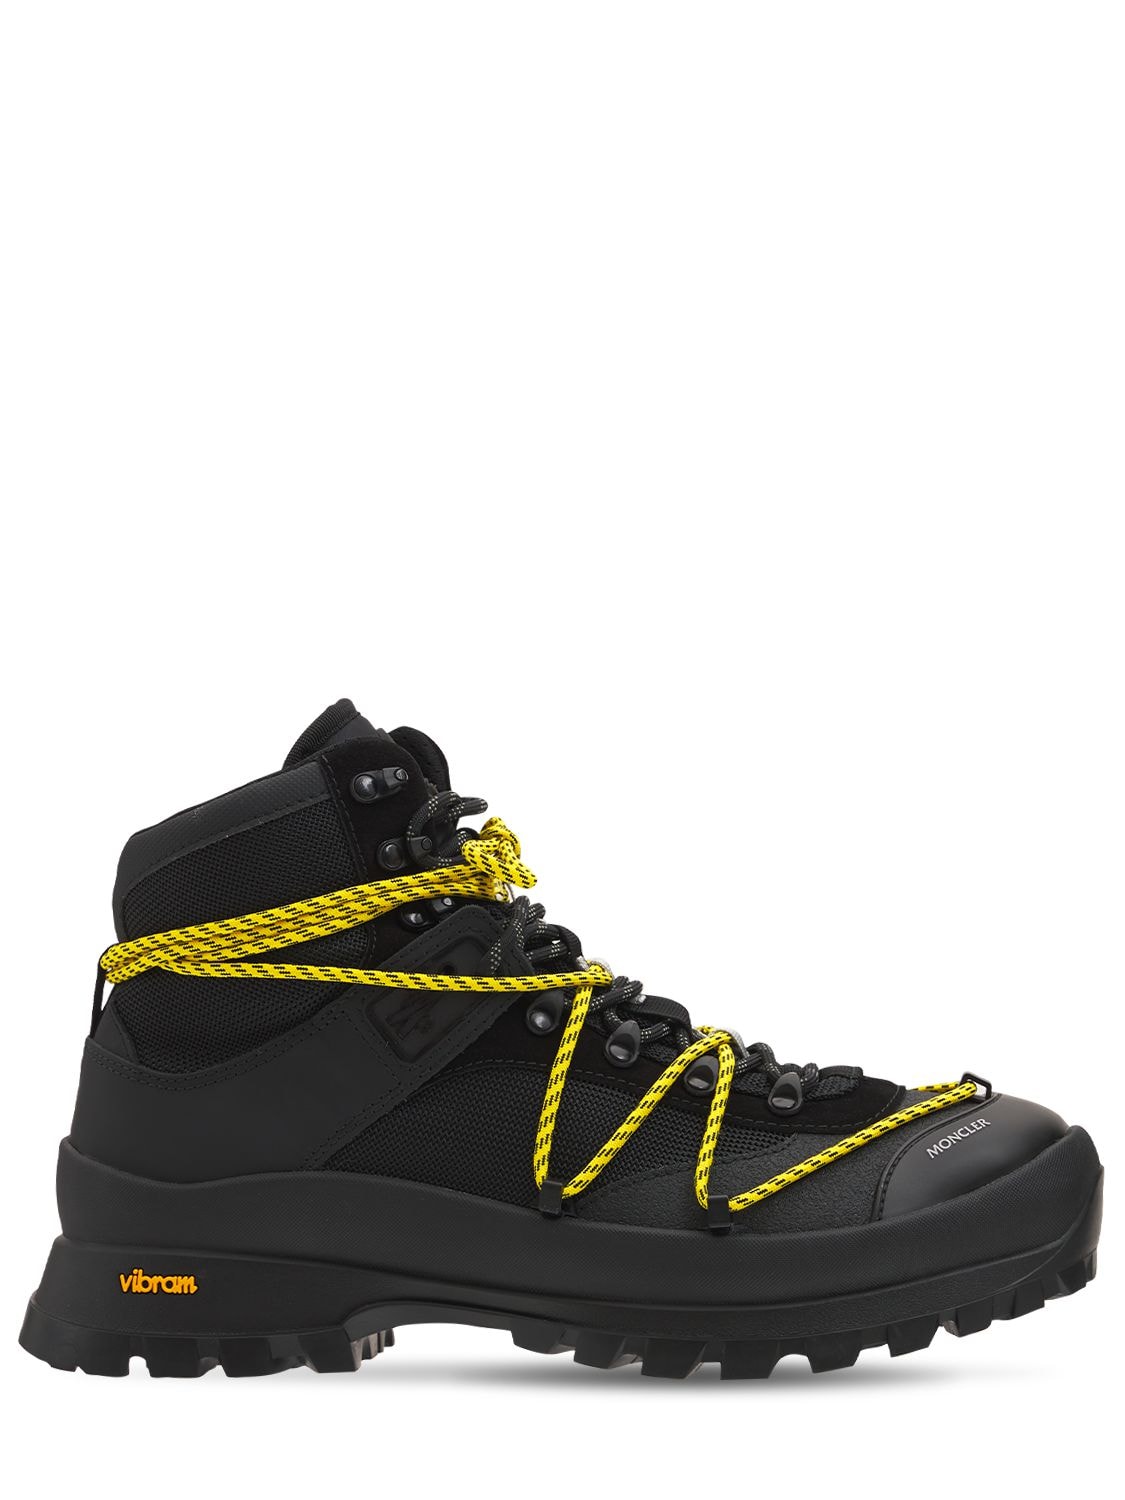 MONCLER GLACIER登山靴,74I0T9020-OTK50